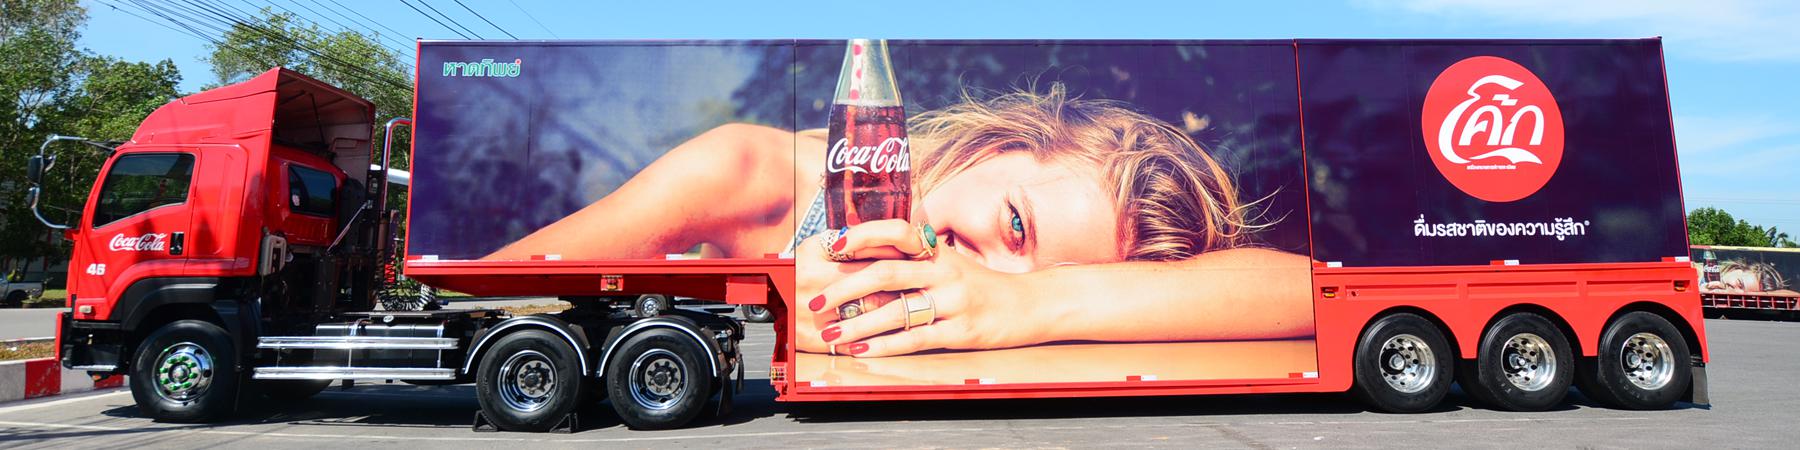 รถพ่วงพร้อมรูปภาพ Coca-Cola